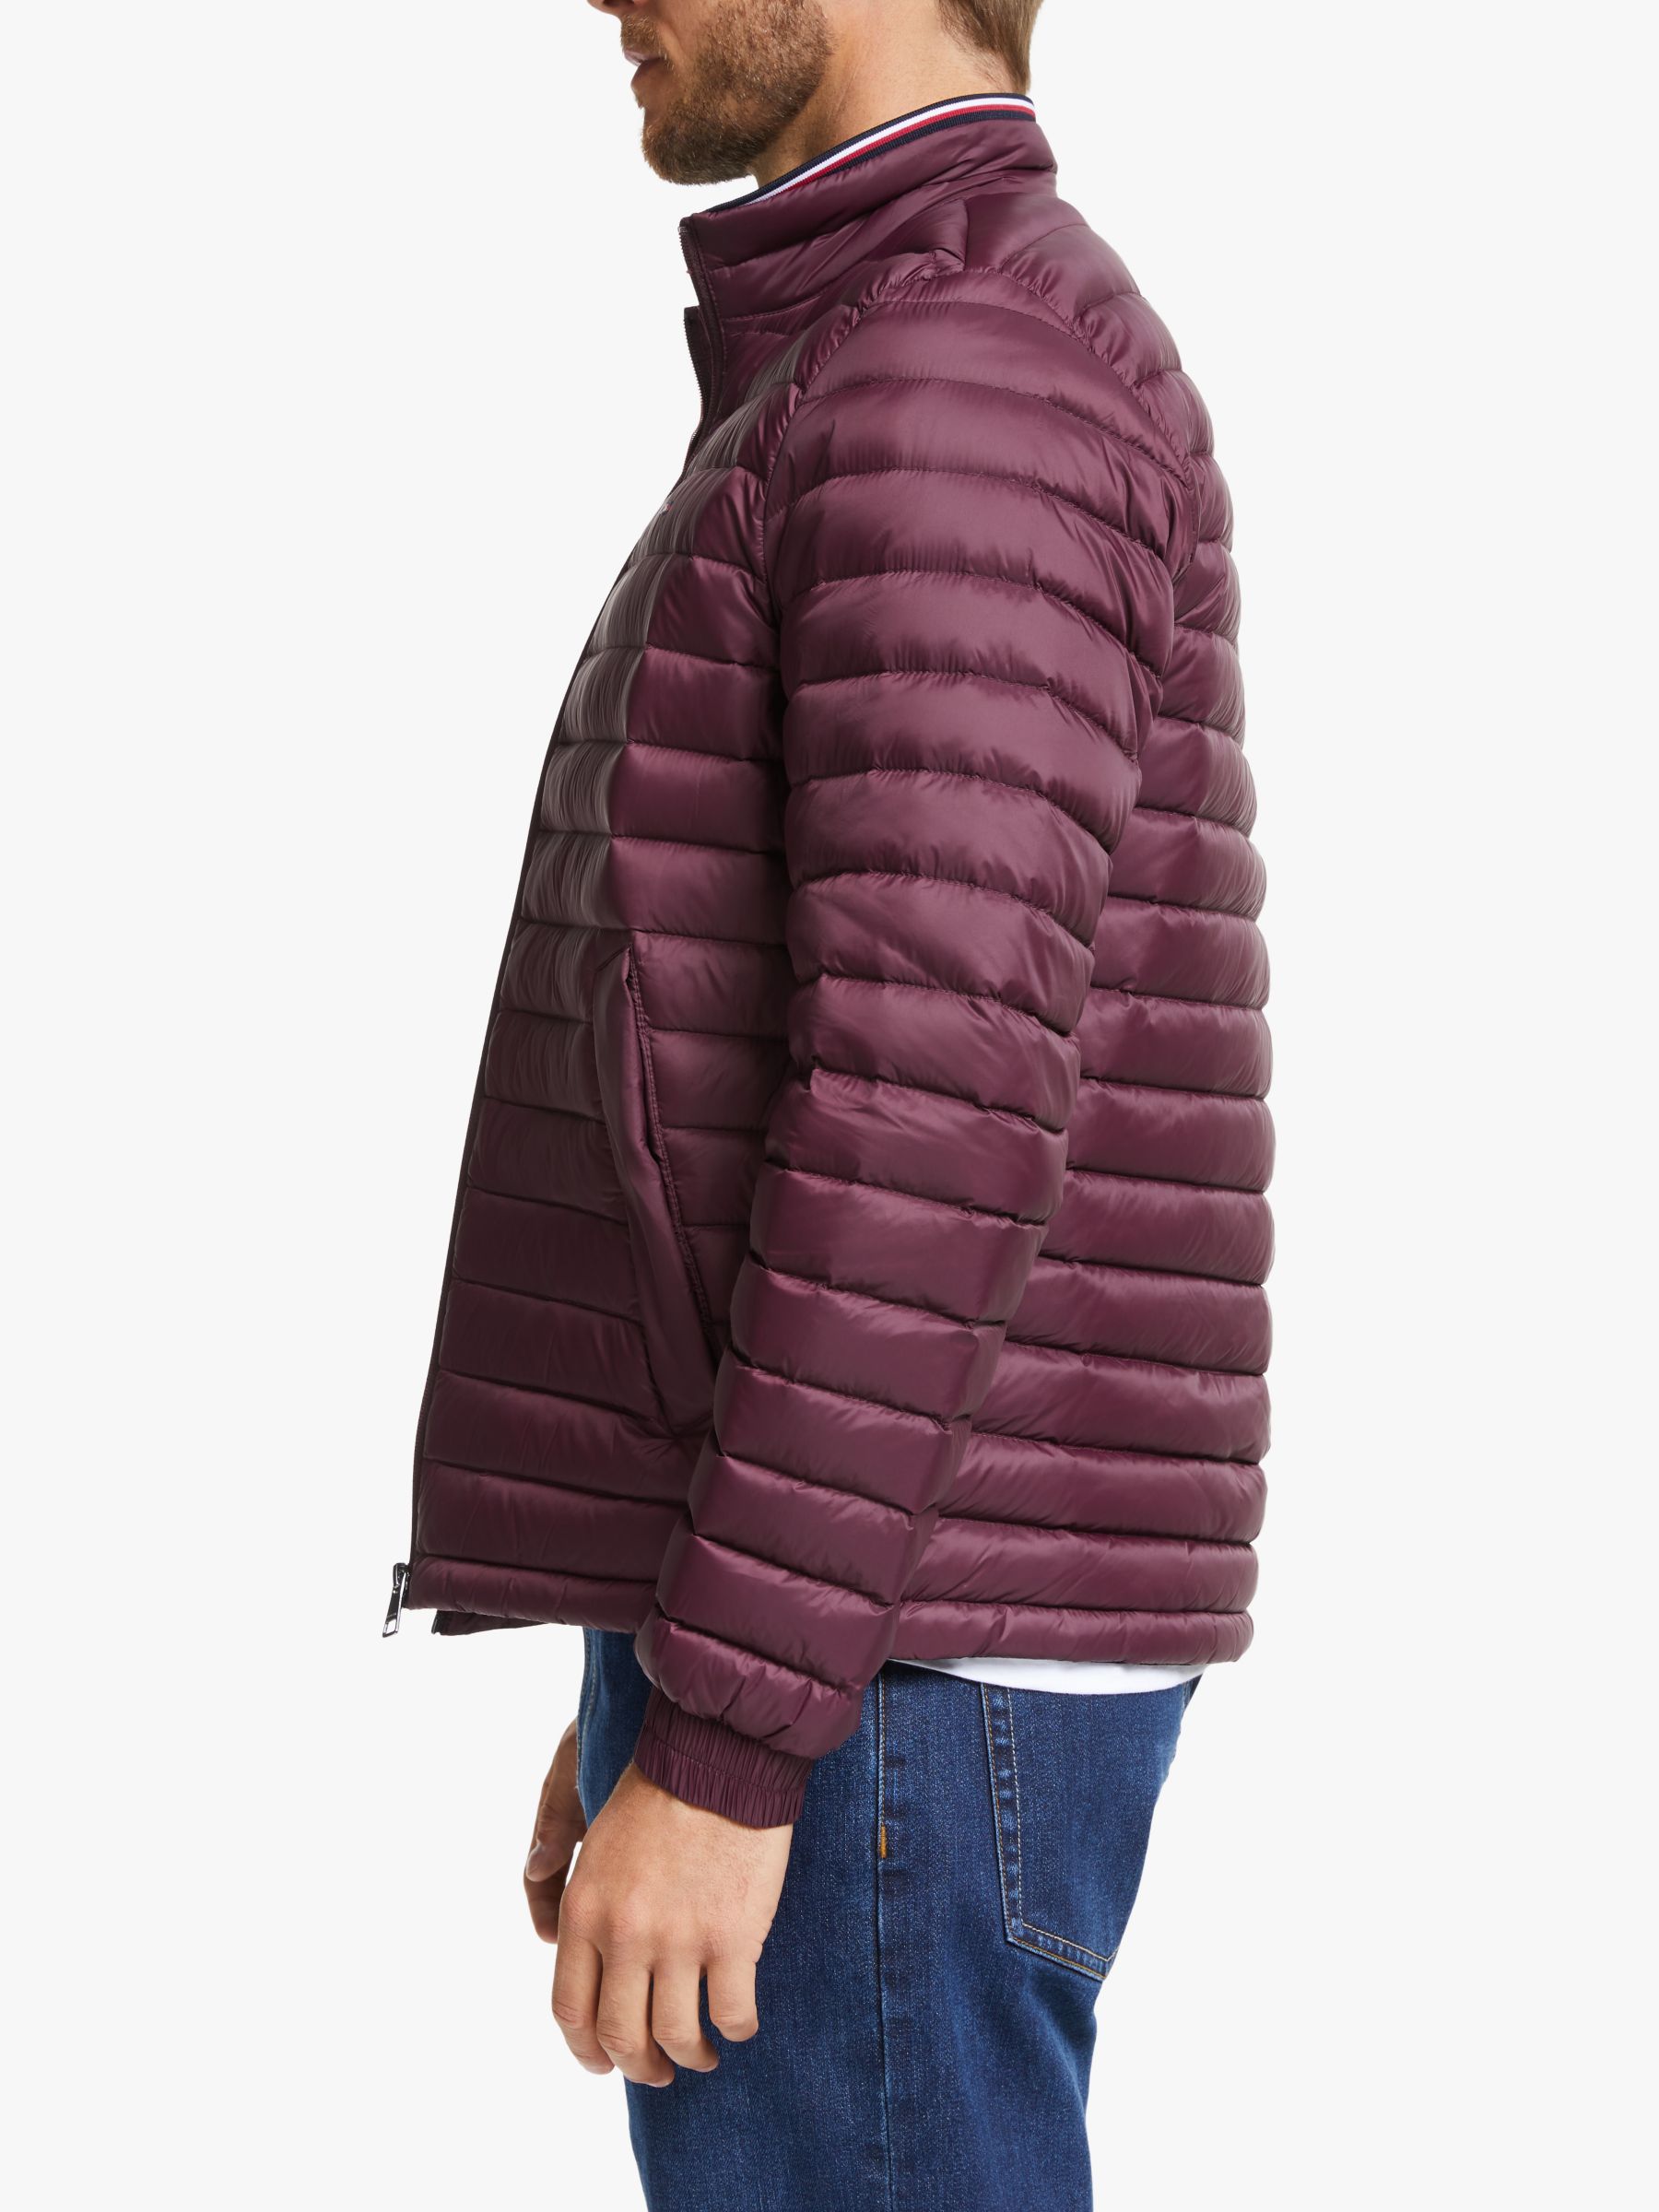 tommy hilfiger burgundy coat